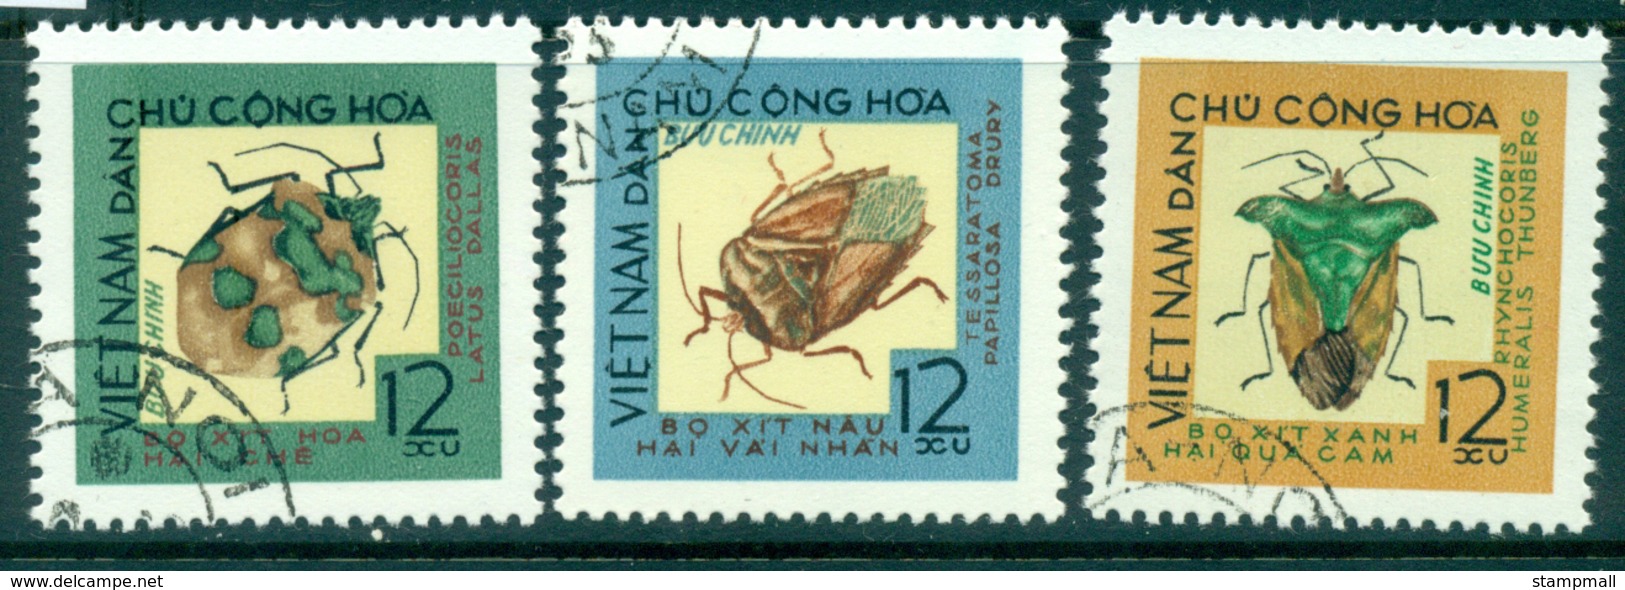 Vietnam North 1965 Beetles Part I FU Lot33866 - Vietnam